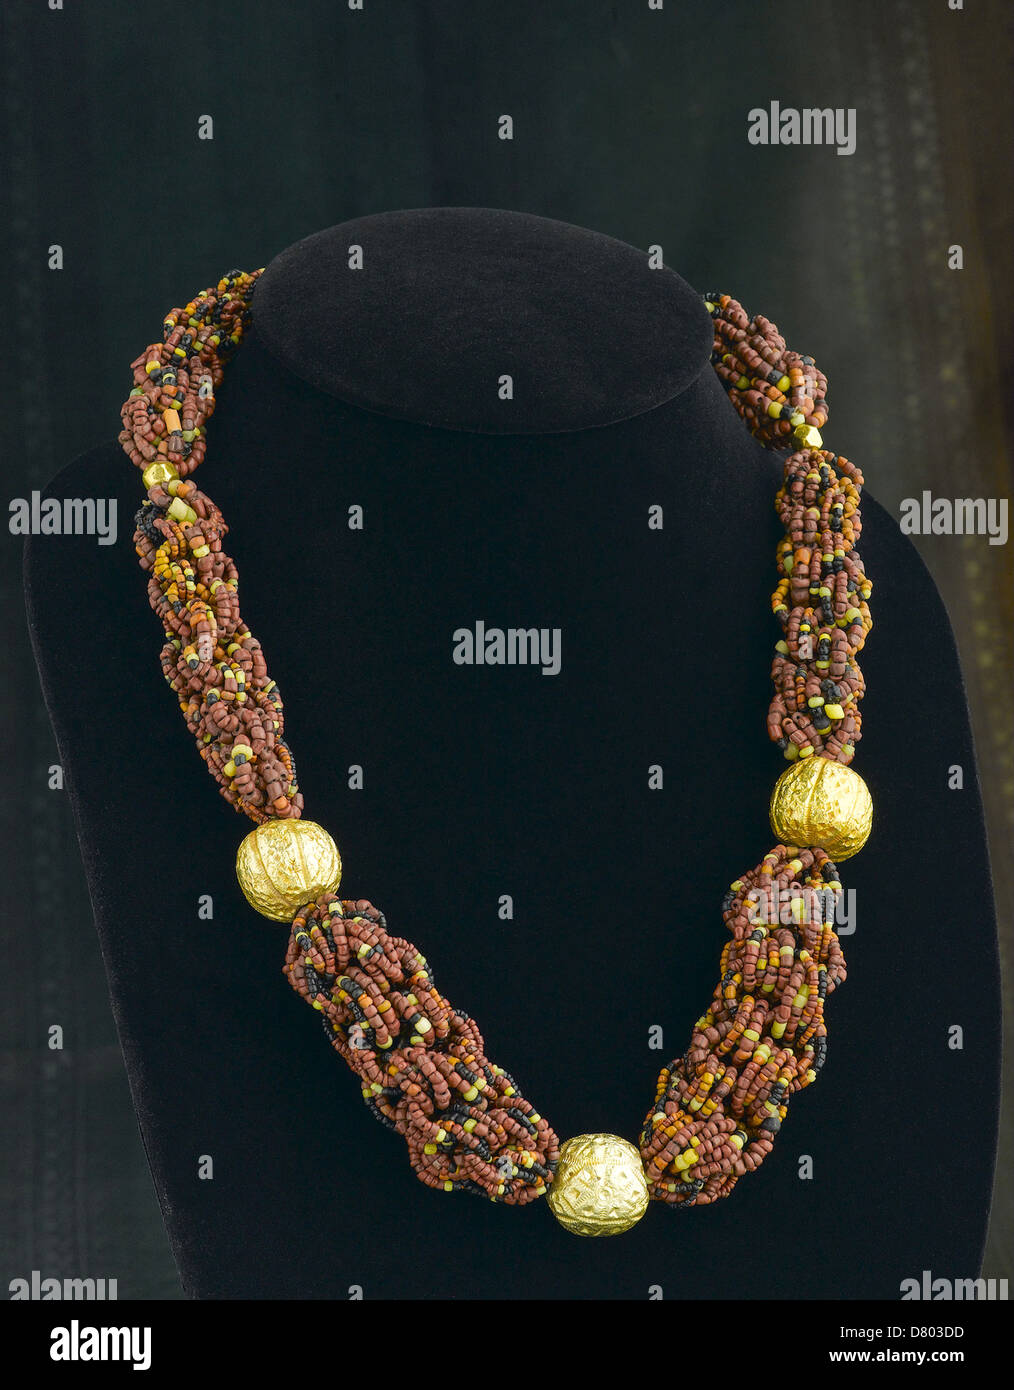 Collier de perles colorées décorées par l'or Banque D'Images